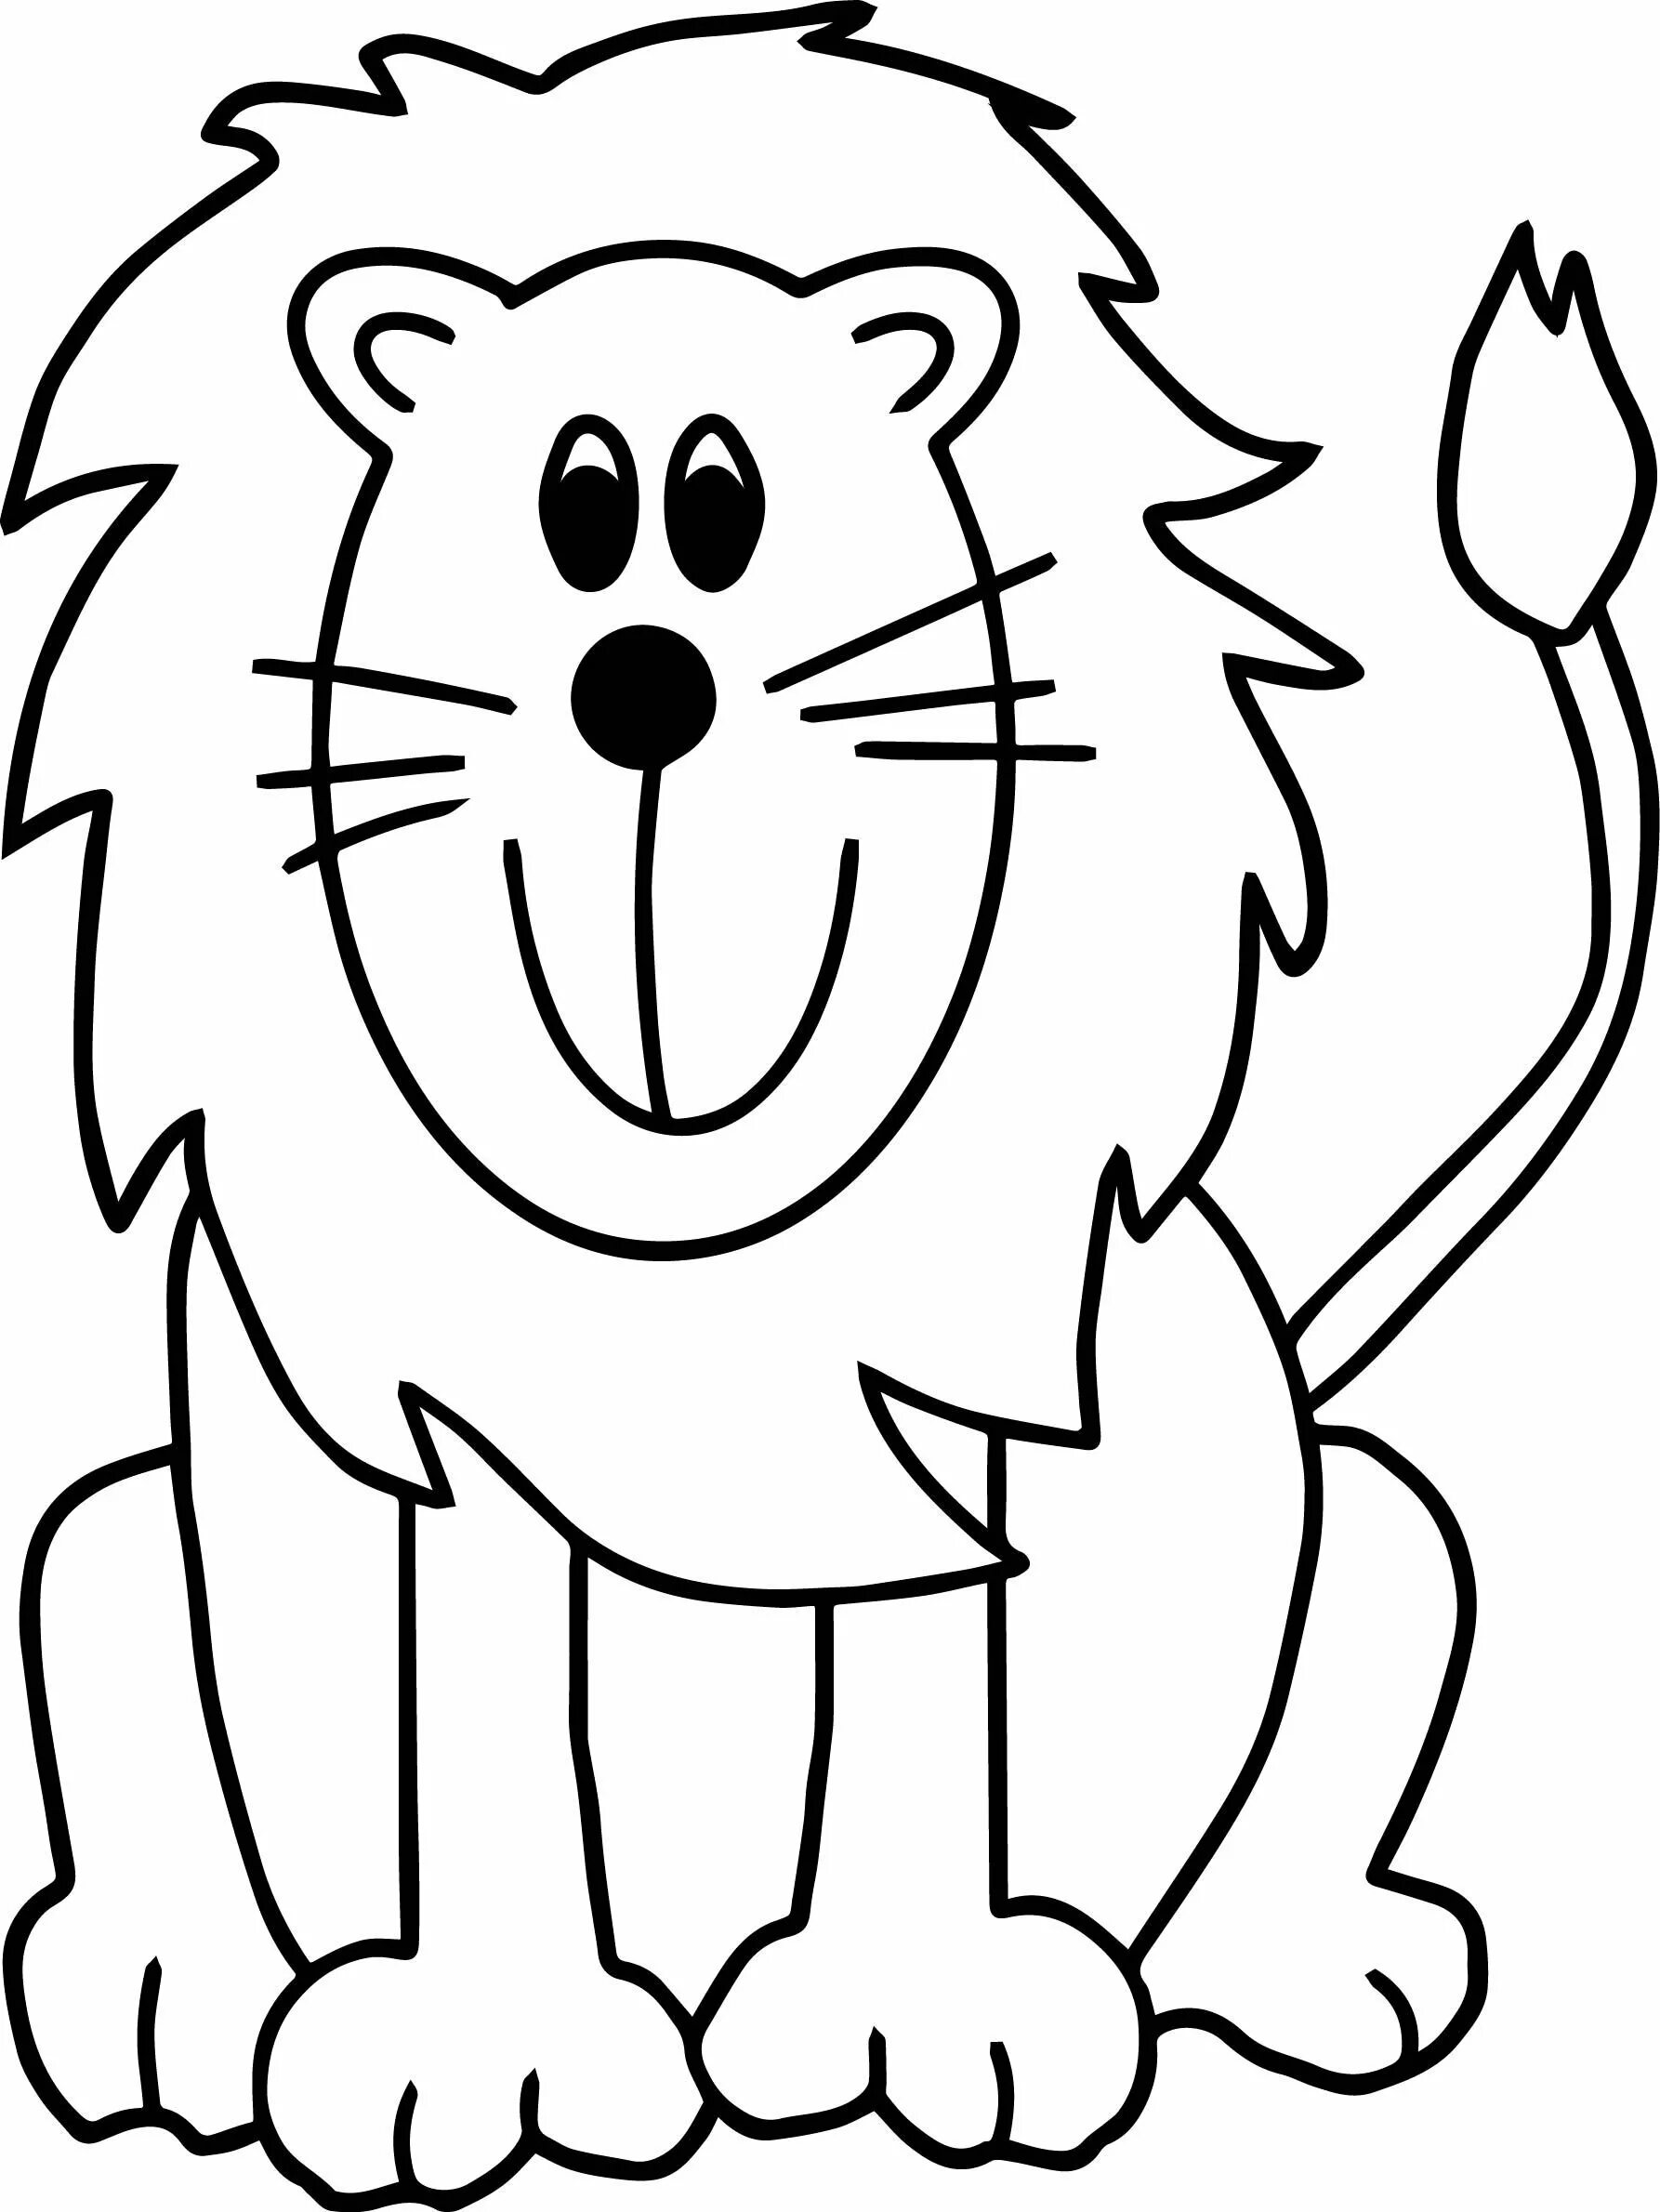 Динамический рисунок льва для детей